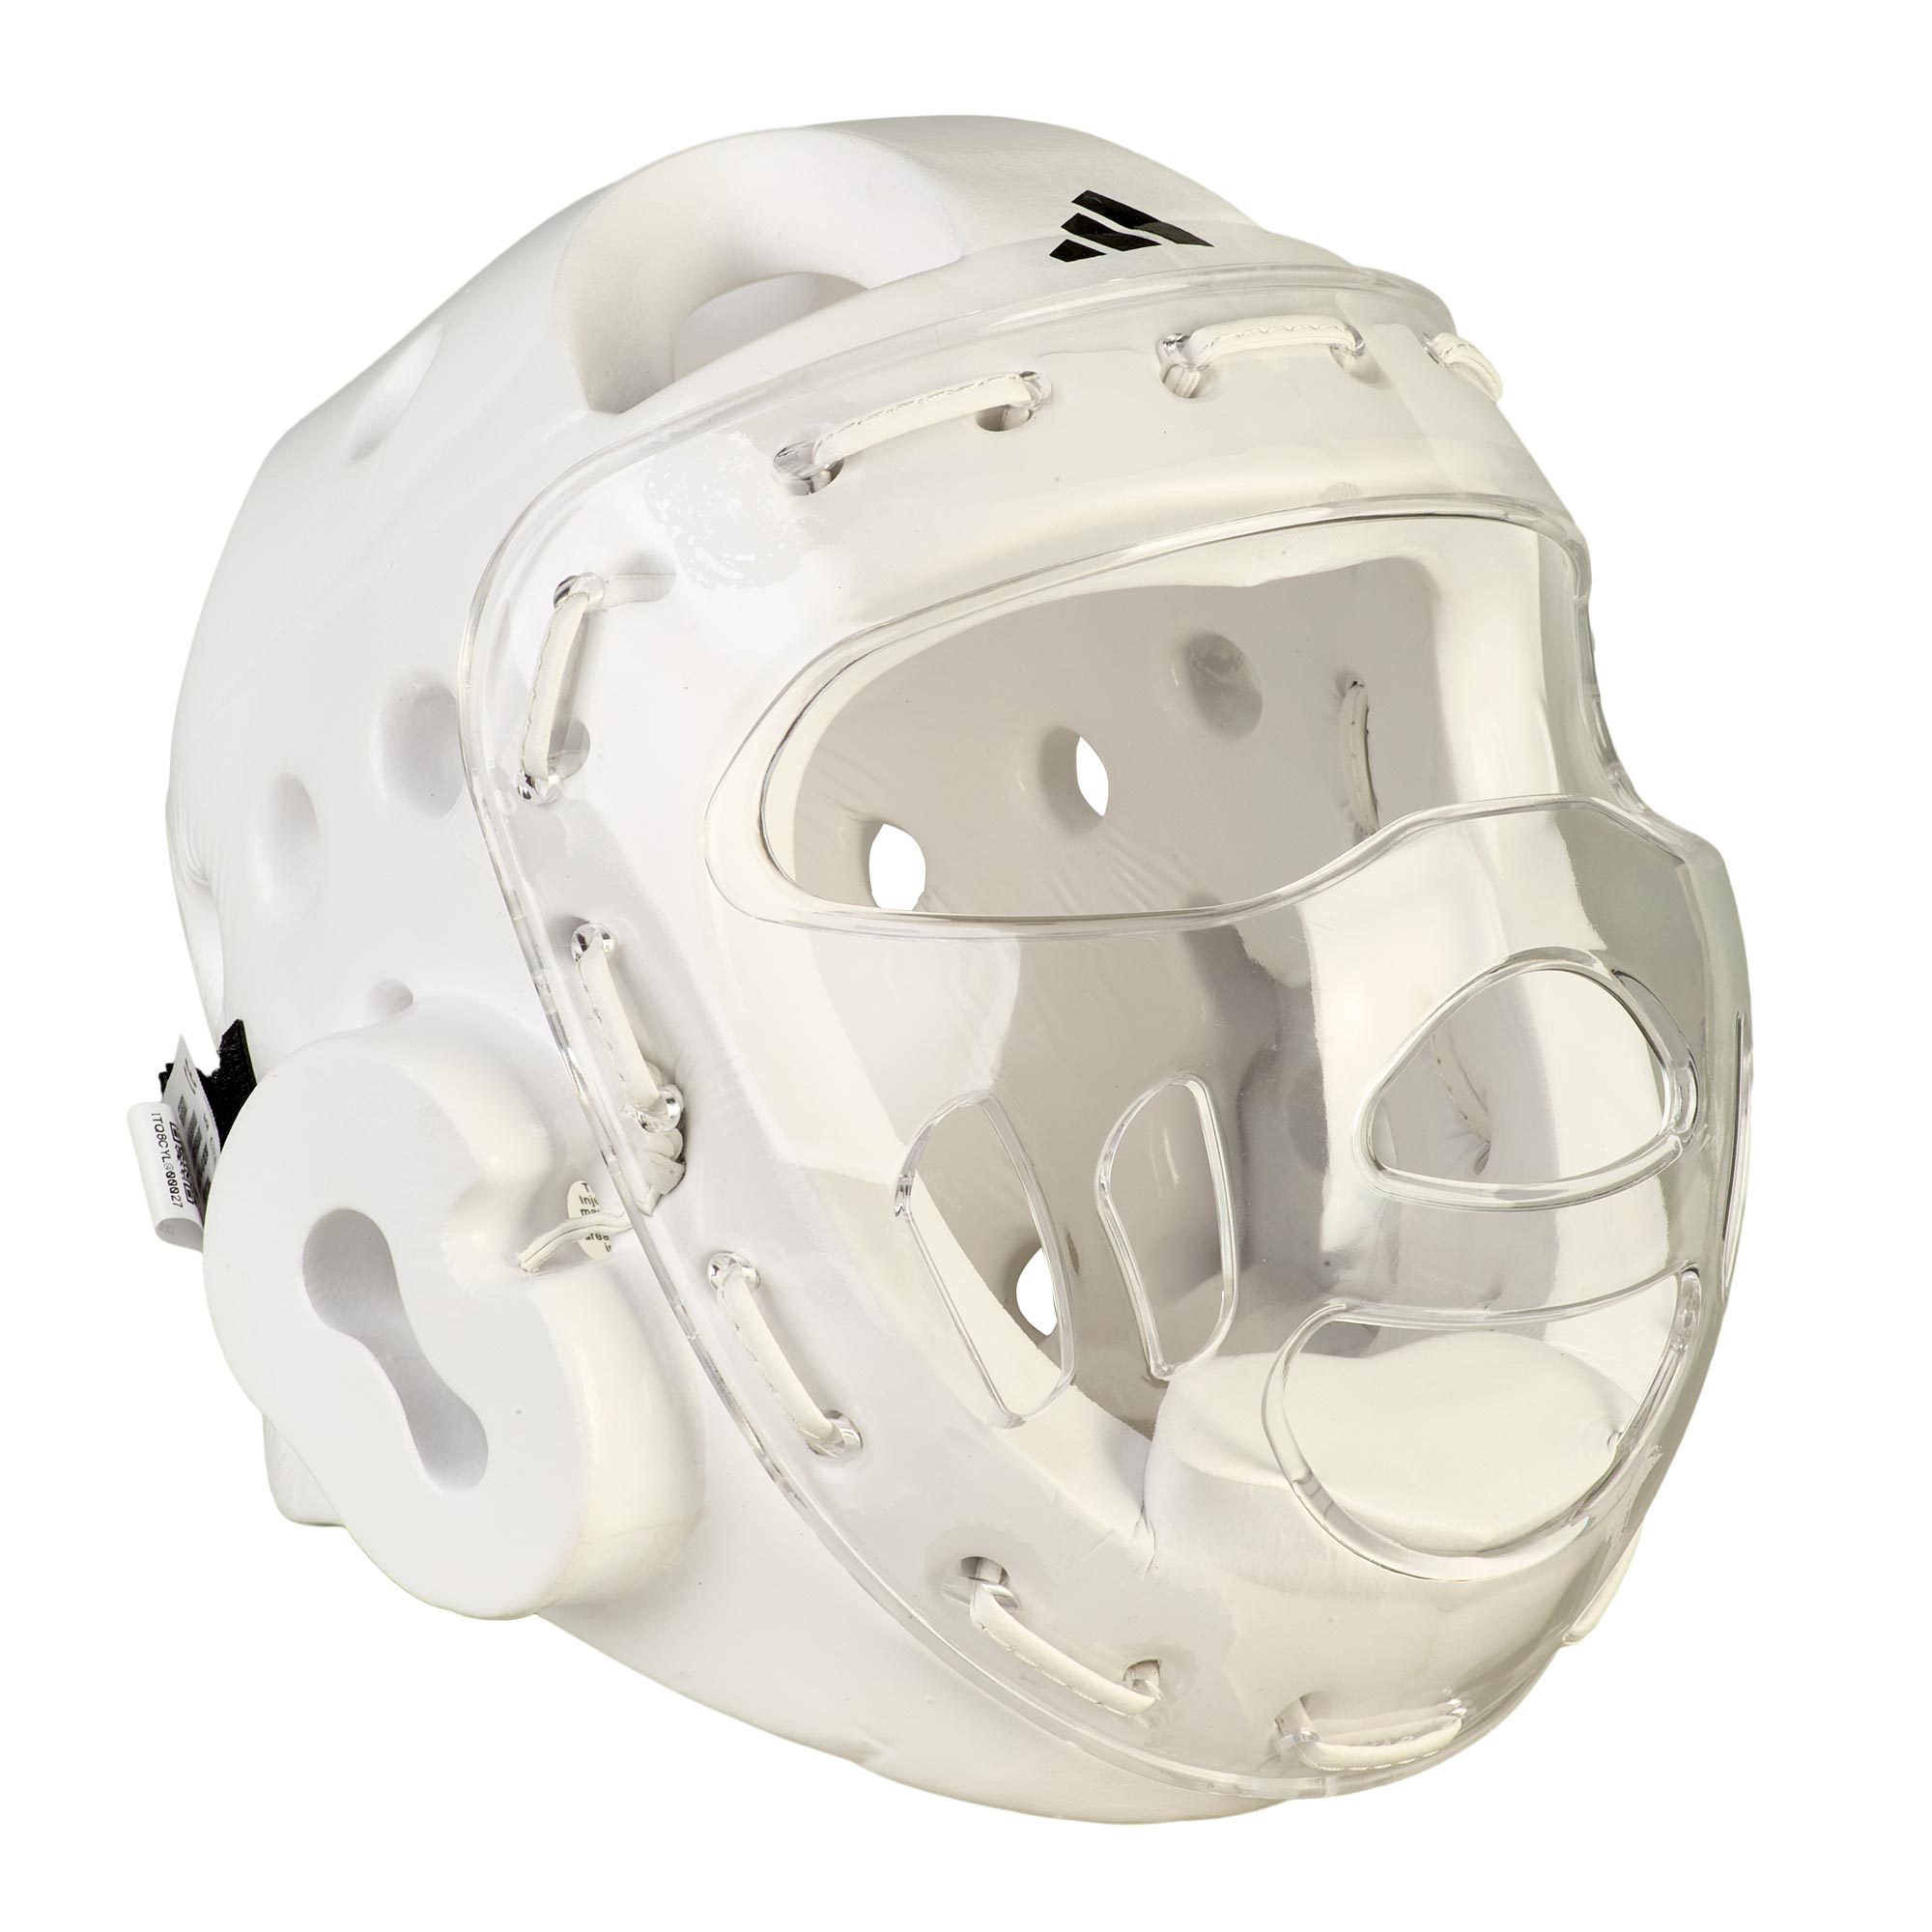 adidas Kopfschutz Dip weiß mit Maske, ADITHGM01